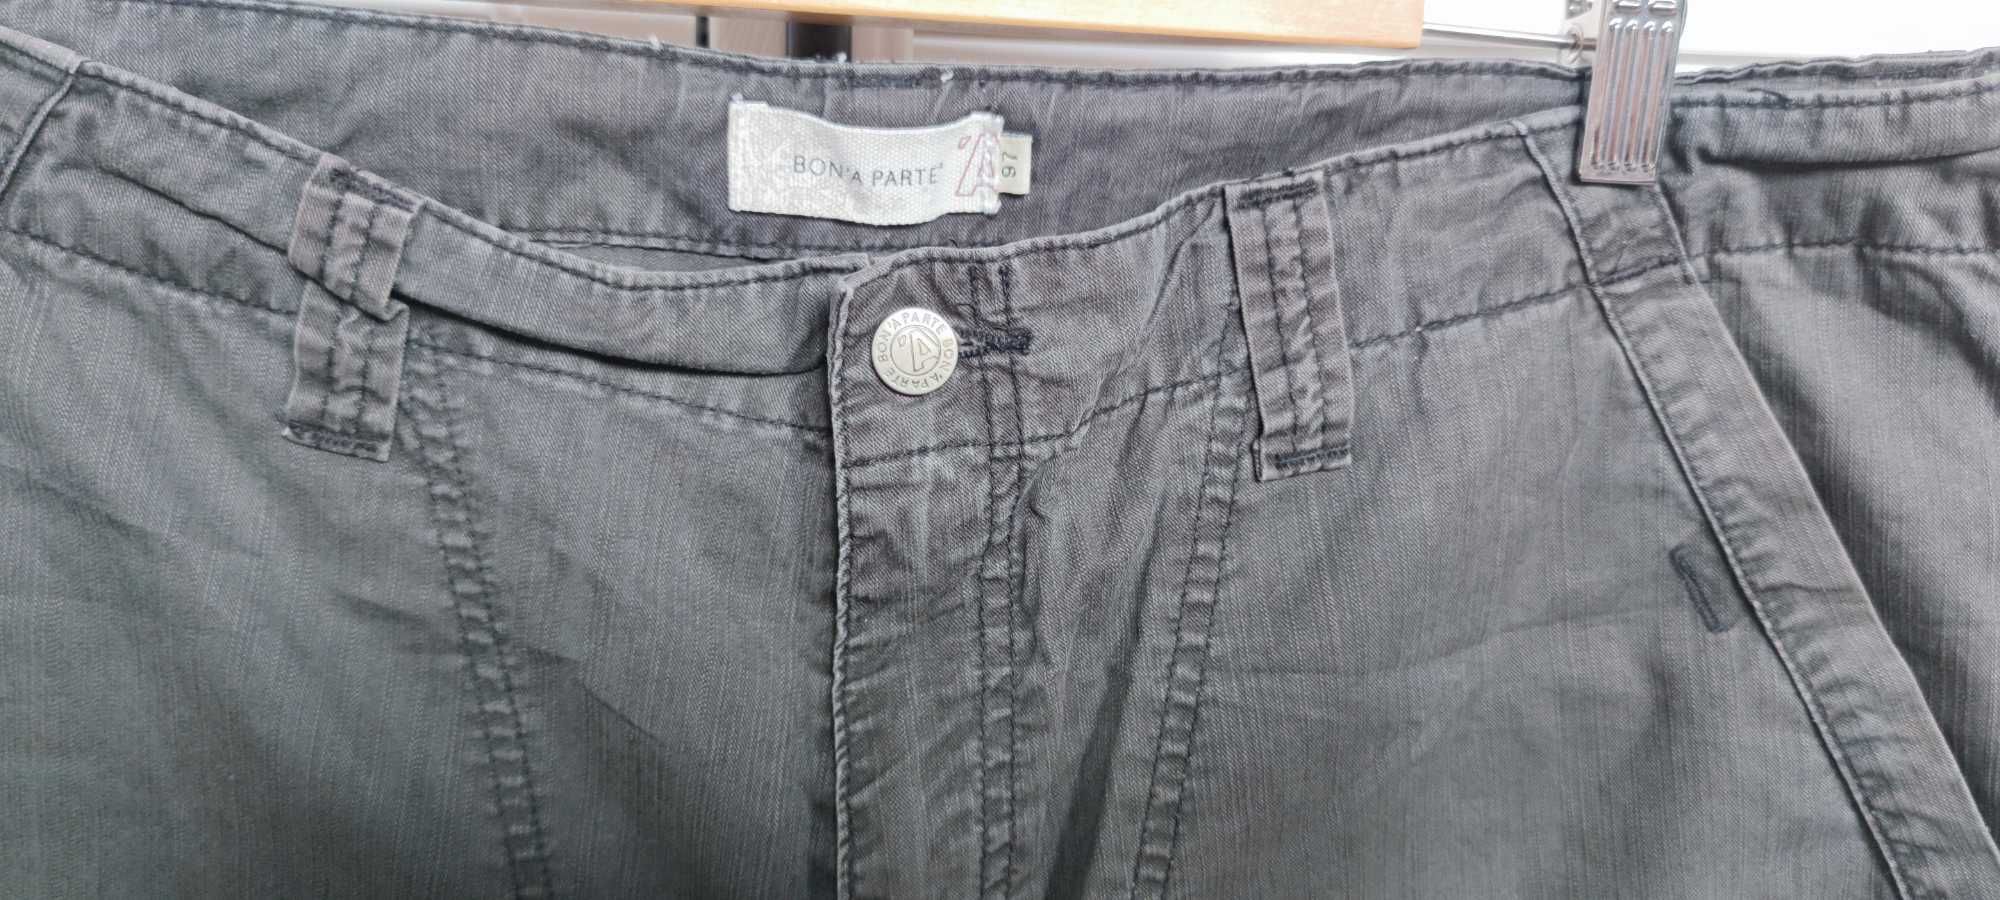 Spodnie męskie krótkie - Bon'a Parte r. XL (97 cm/pas) - bawełna